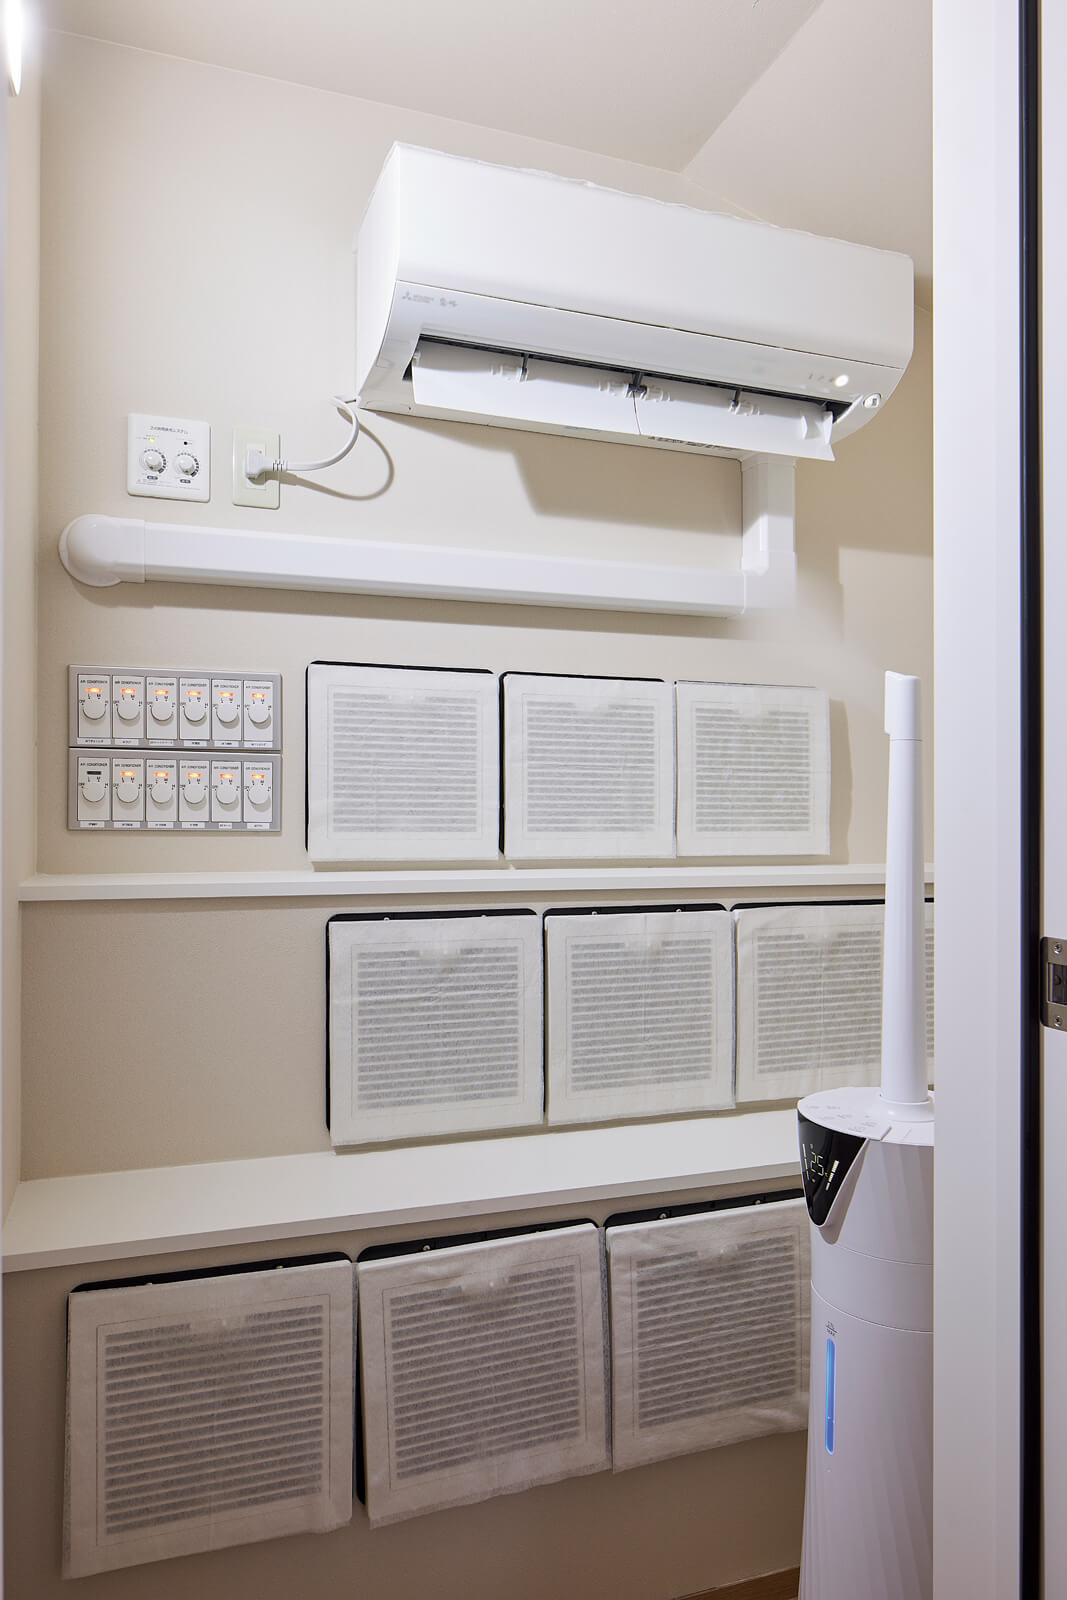 全館空調システム「YUCACO」の空調室。「乾燥対策として、業務用の加湿器を設置してみました。うまい具合に湿度もコントロールできています」とHさん。YUCACOはシンプルなシステム構造のため、住まい手自らの工夫が容易。「少しずつコツをつかみながら、省エネルギーな暮らしをしていきたいです」と、Hさんは楽しそうに話す